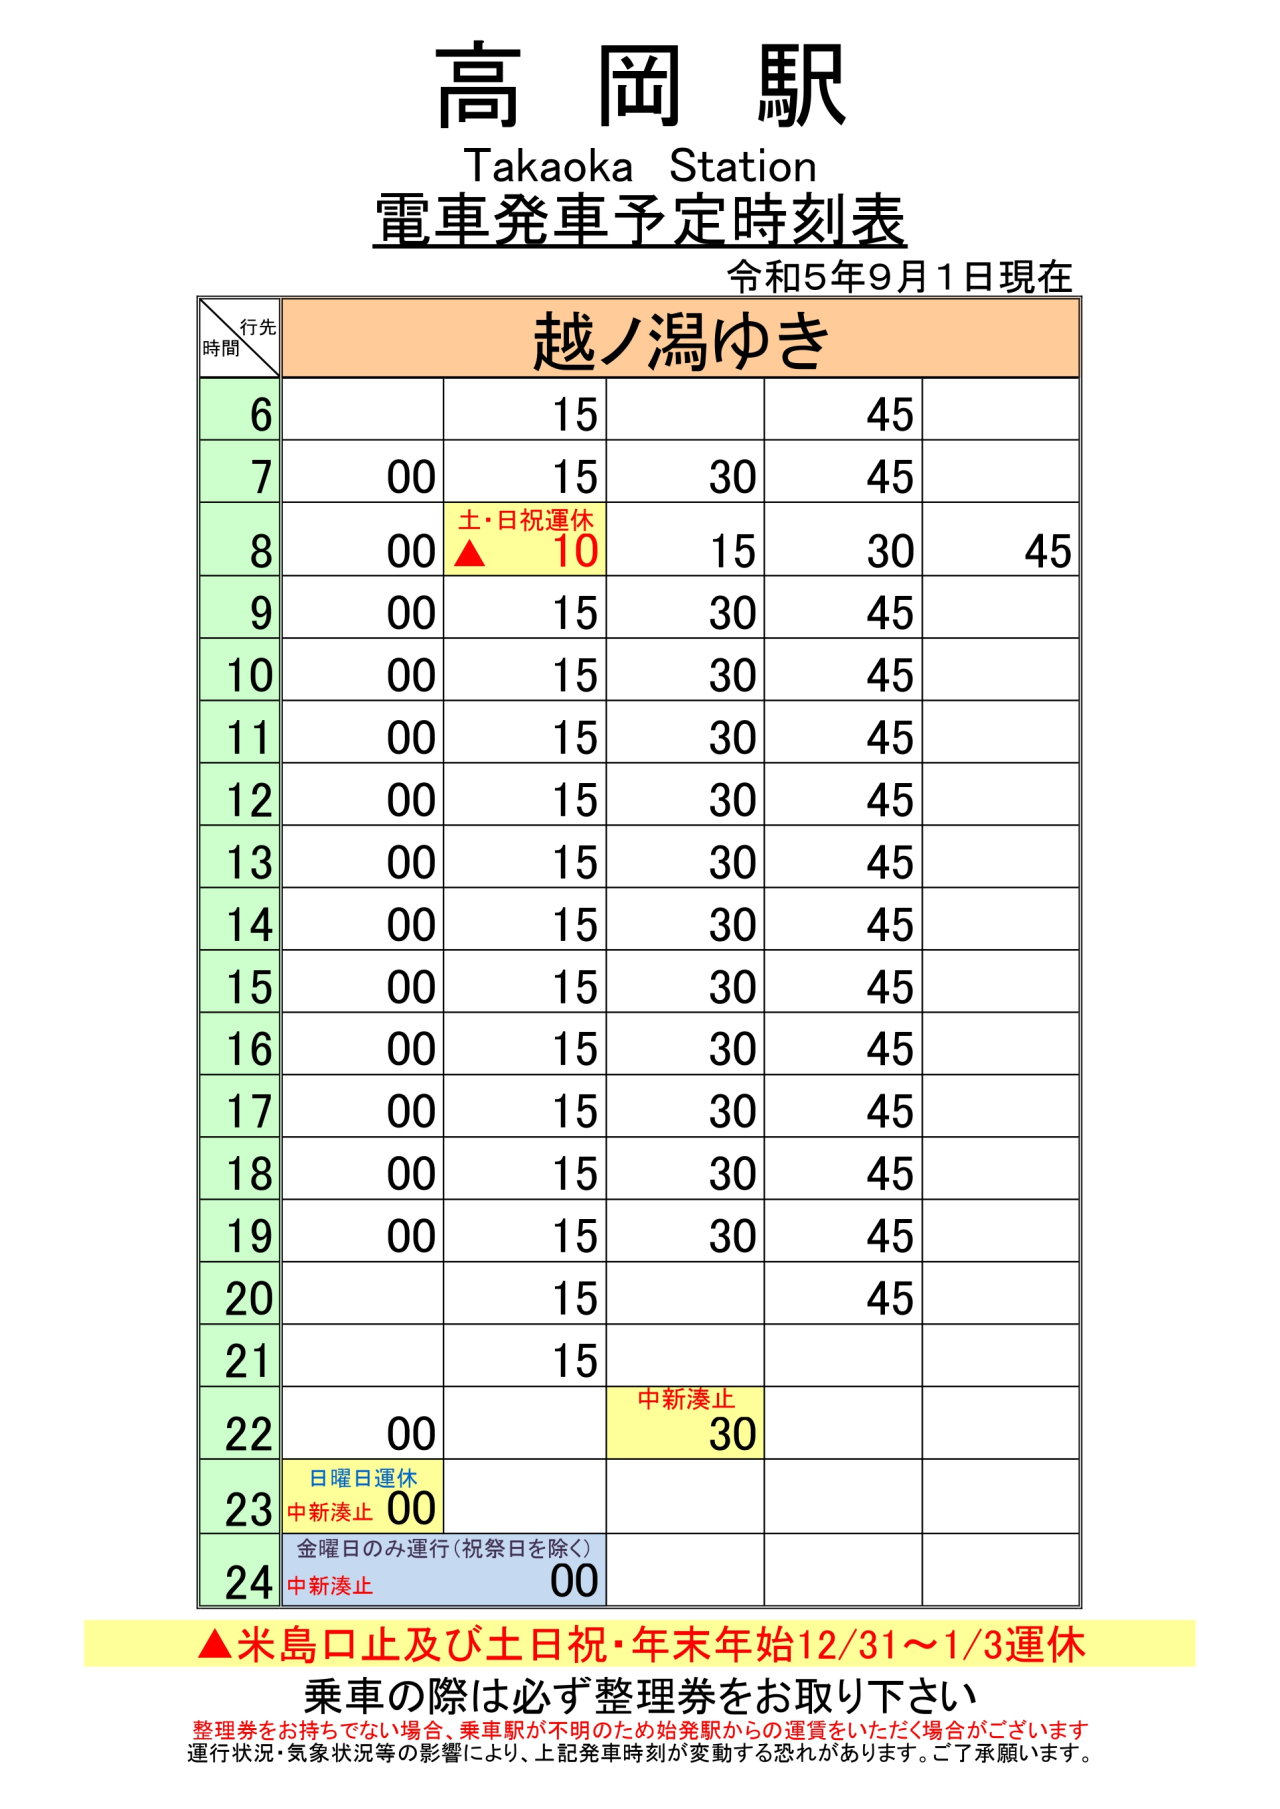 最新5.5.1改正各駅時刻表(高岡駅)_page-0001